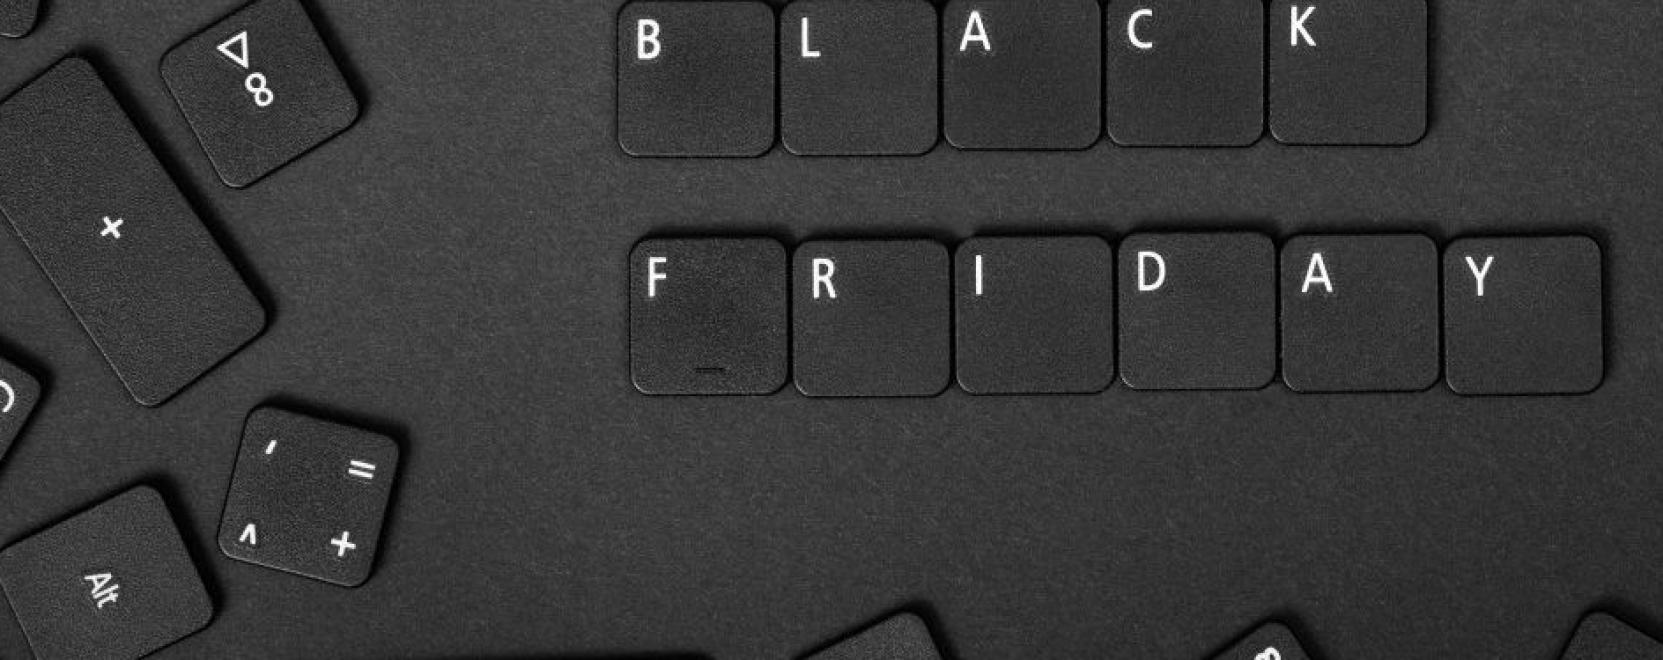 Black Friday: vigyázat, rákapcsoltak az adathalászok